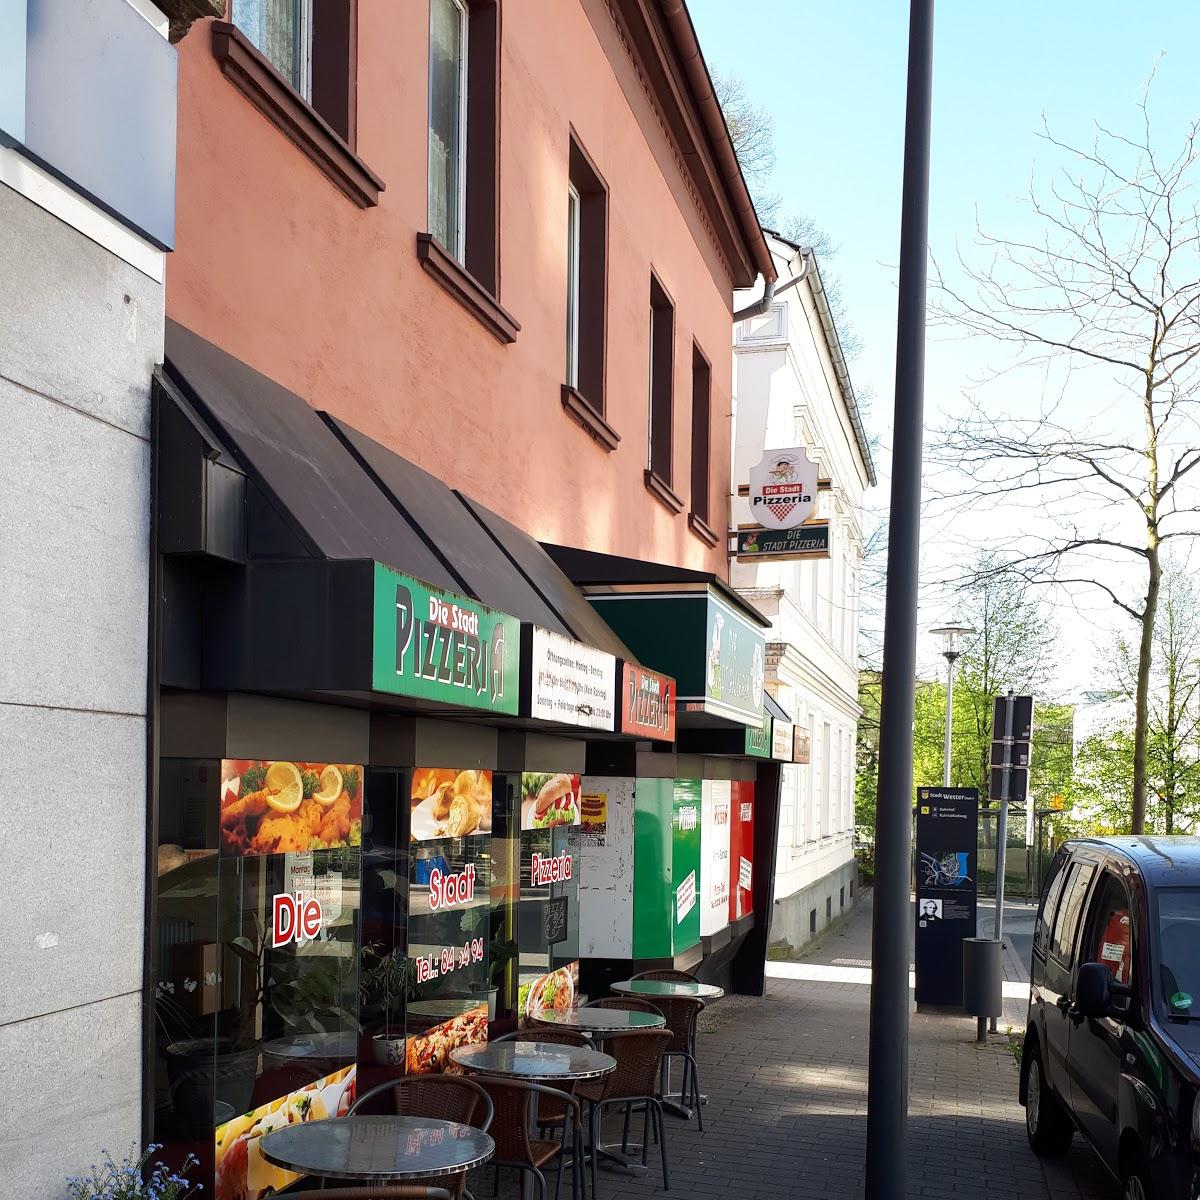 Restaurant "Die Stadtpizzeria" in Wetter (Ruhr)